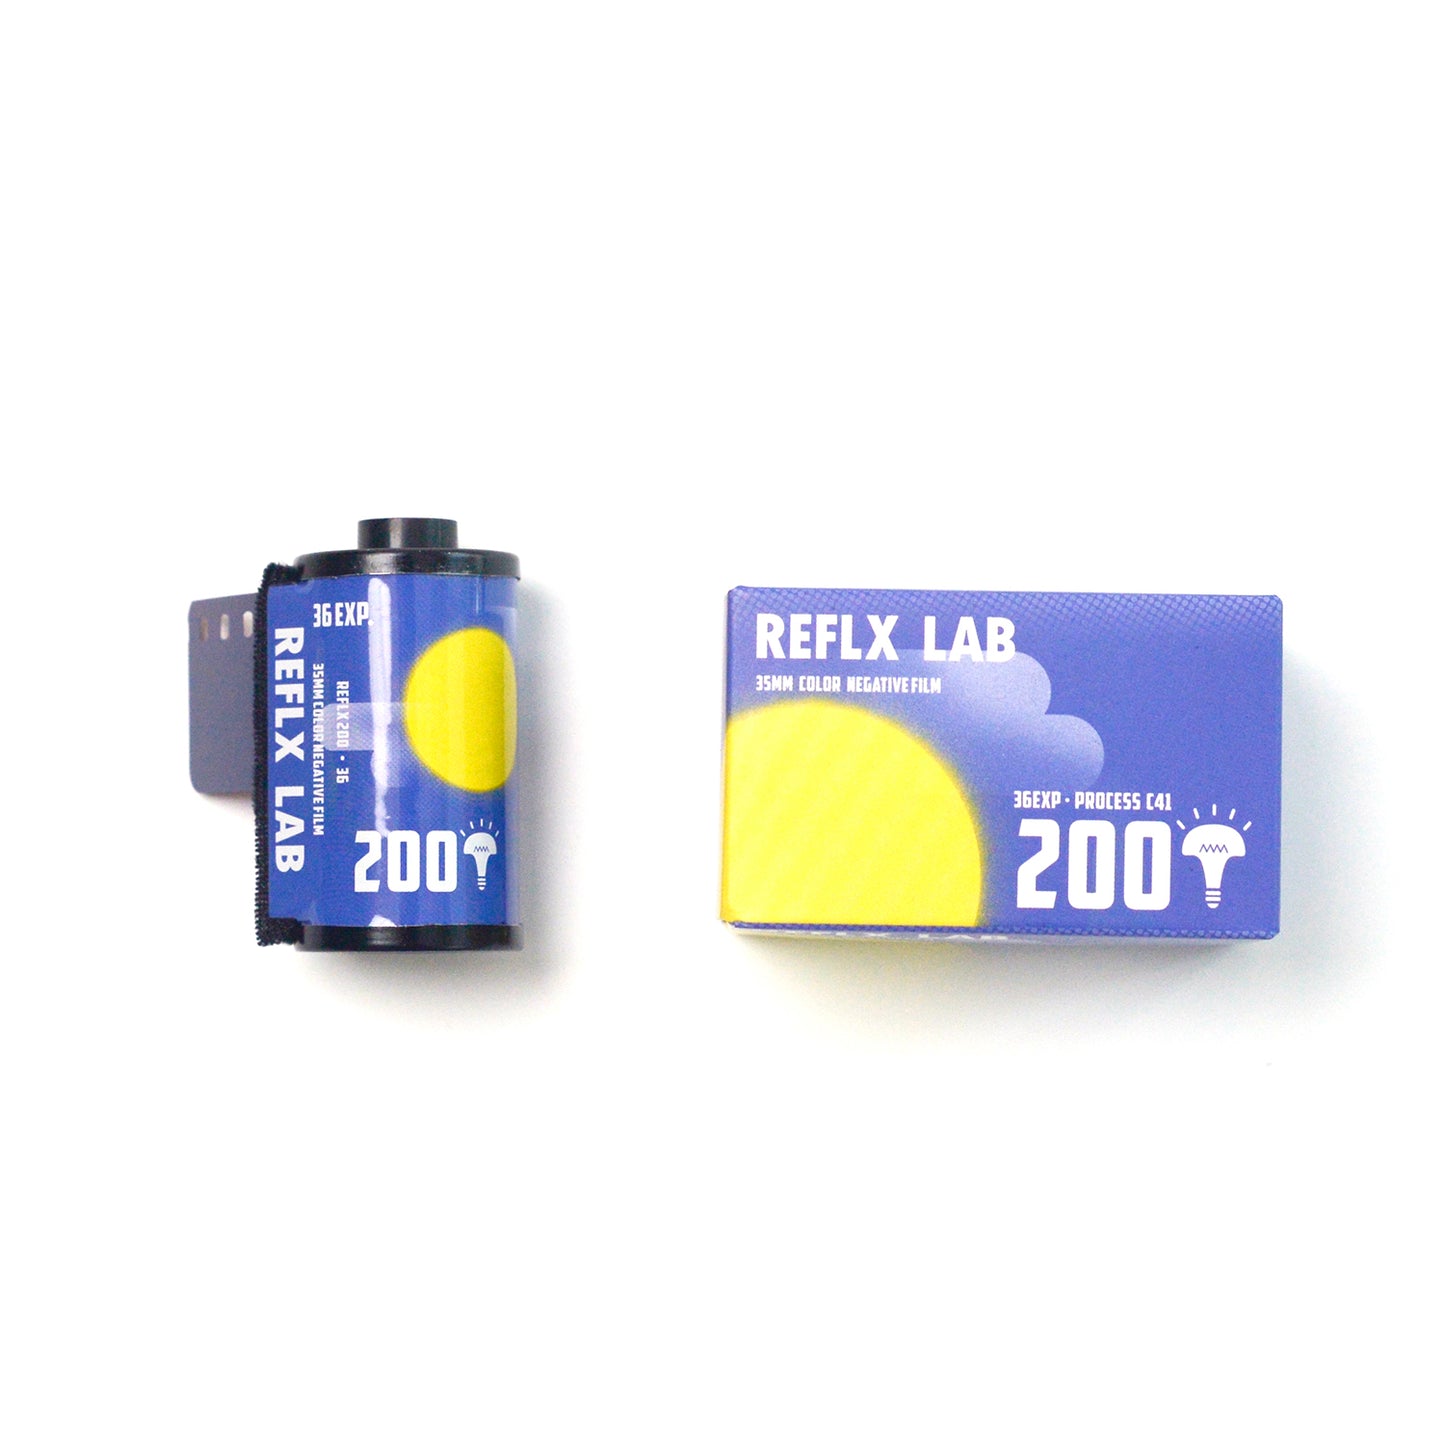 Reflx Lab 200 Tungsten 35mm Color Negative Film 36EXP